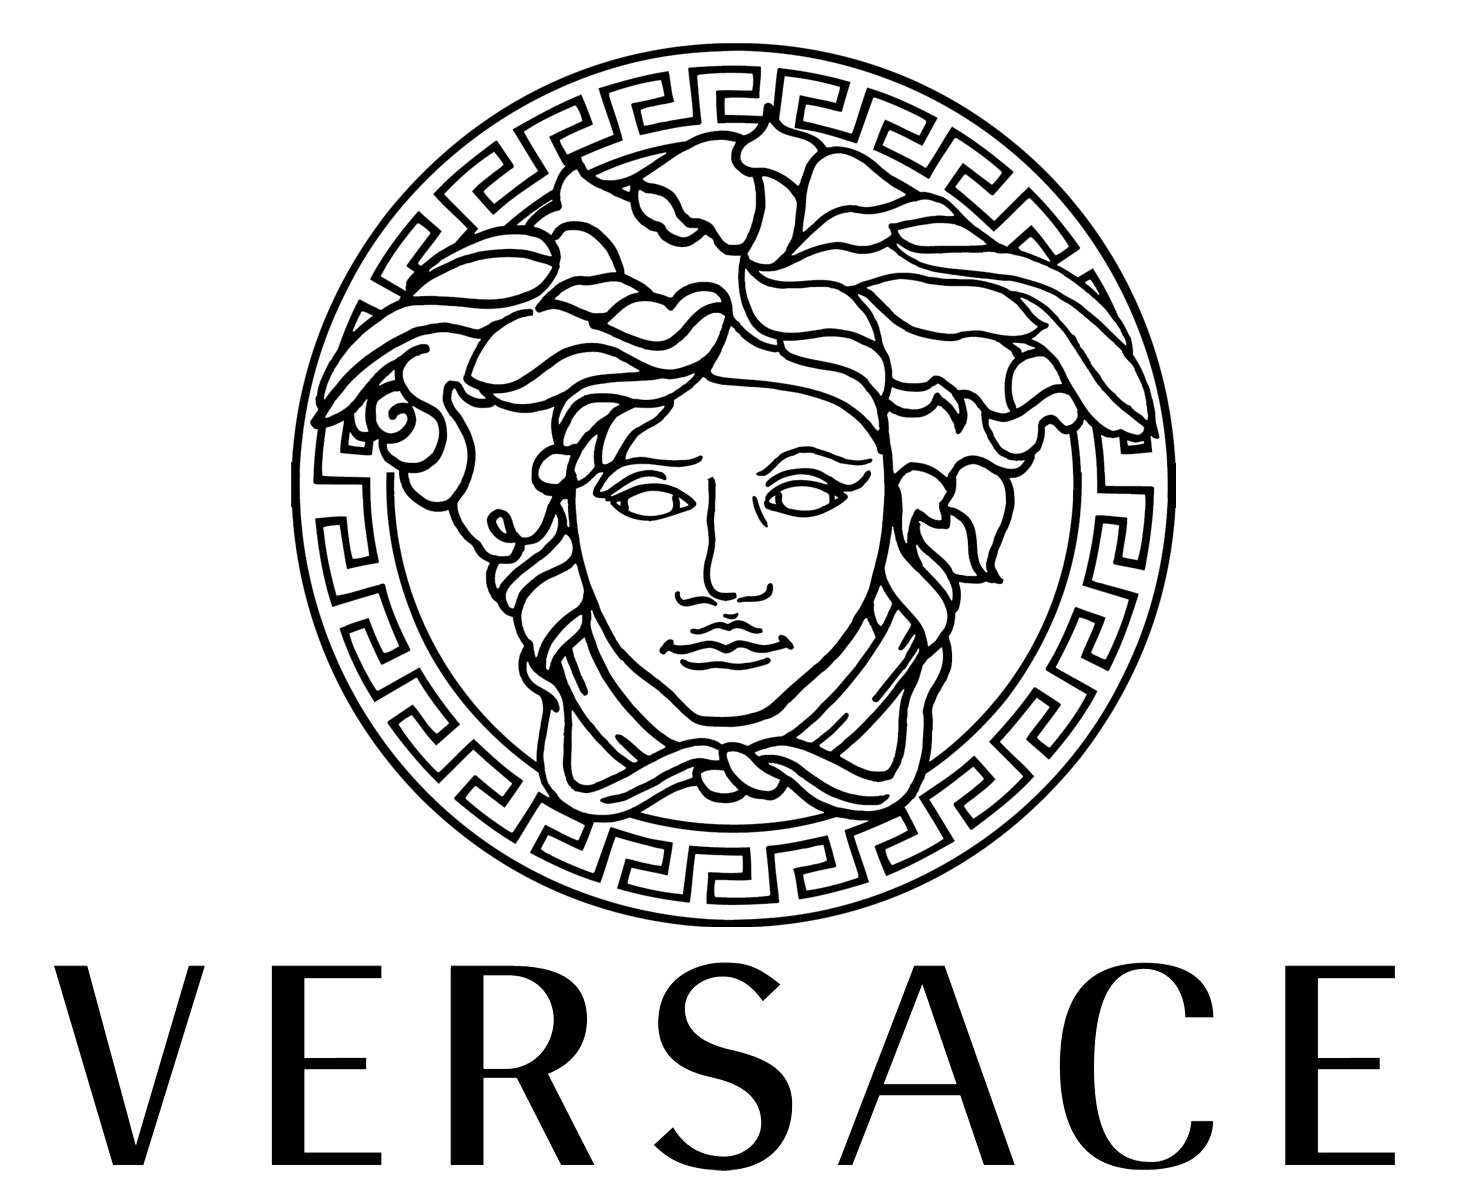 Versace logo : histoire, signification et évolution, symbole